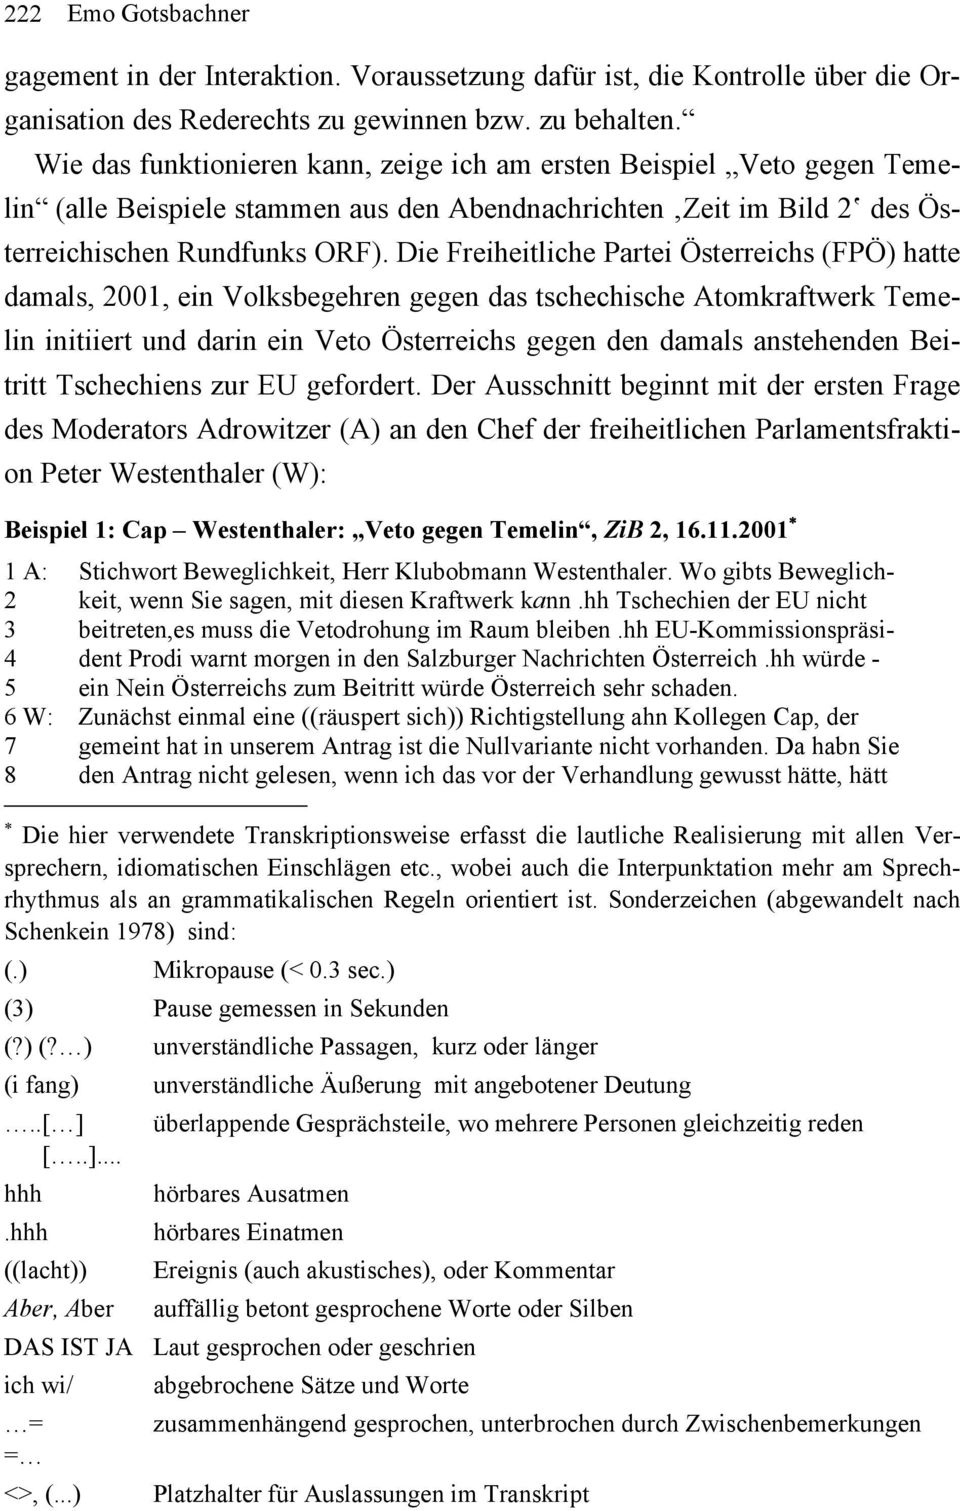 Die Freiheitliche Partei Österreichs (FPÖ) hatte damals, 2001, ein Volksbegehren gegen das tschechische Atomkraftwerk Temelin initiiert und darin ein Veto Österreichs gegen den damals anstehenden